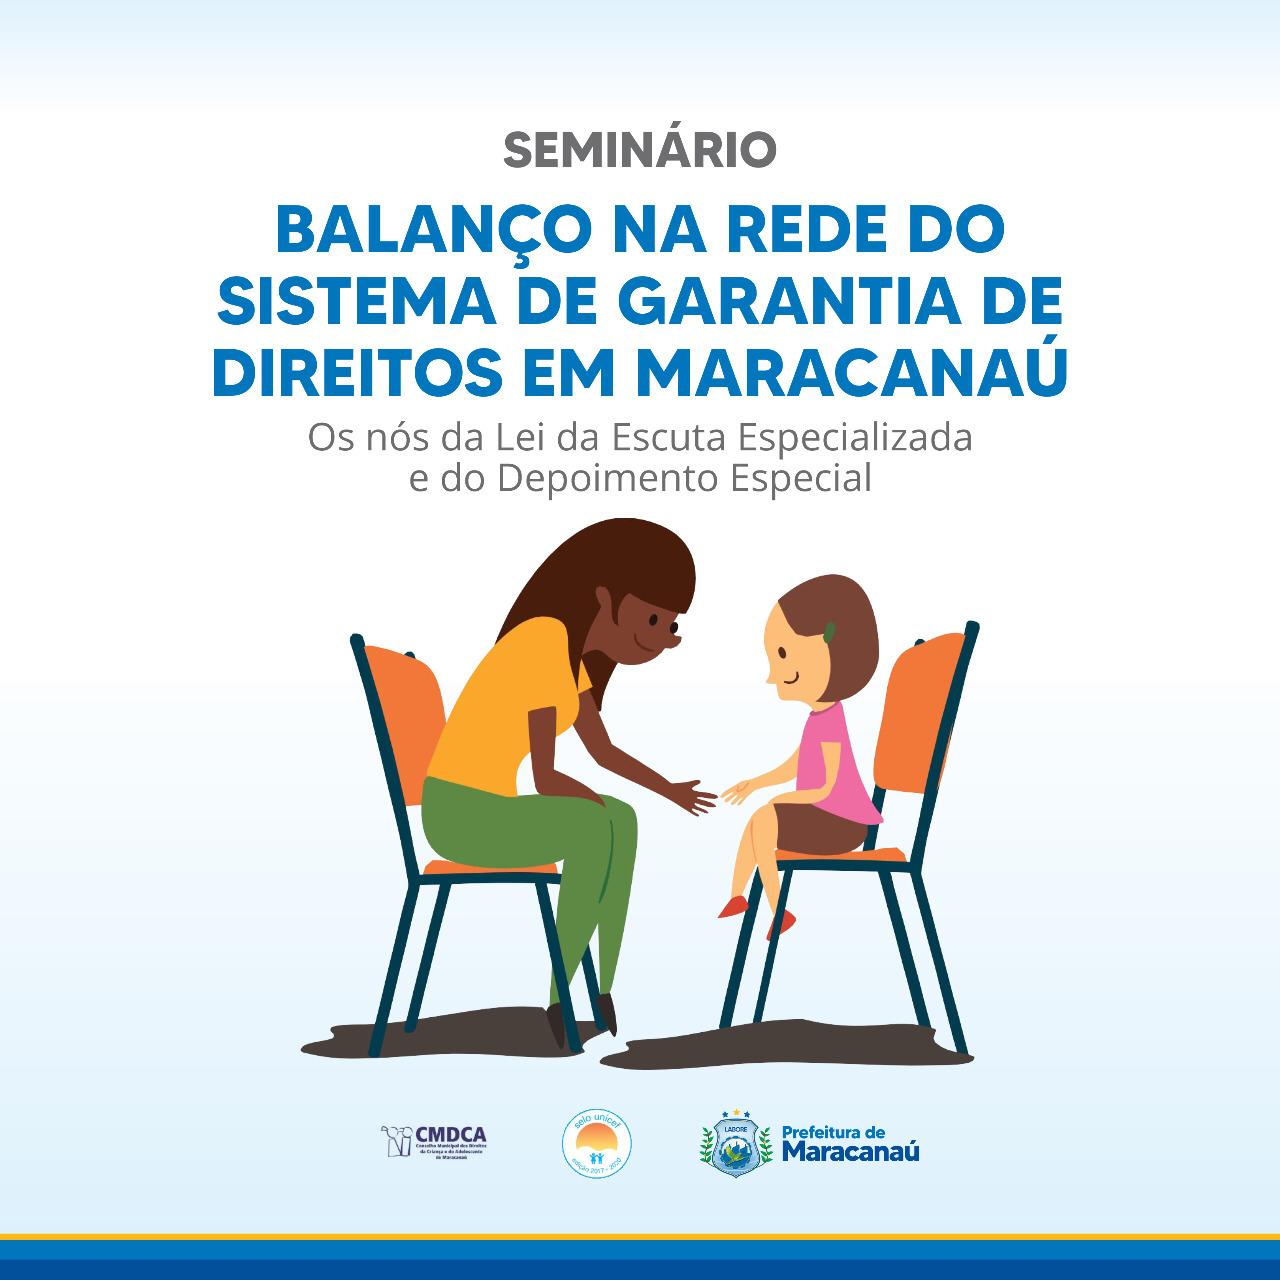 You are currently viewing Seminário Balanço na rede do sistema de garantia de direitos é realizado em Maracanaú